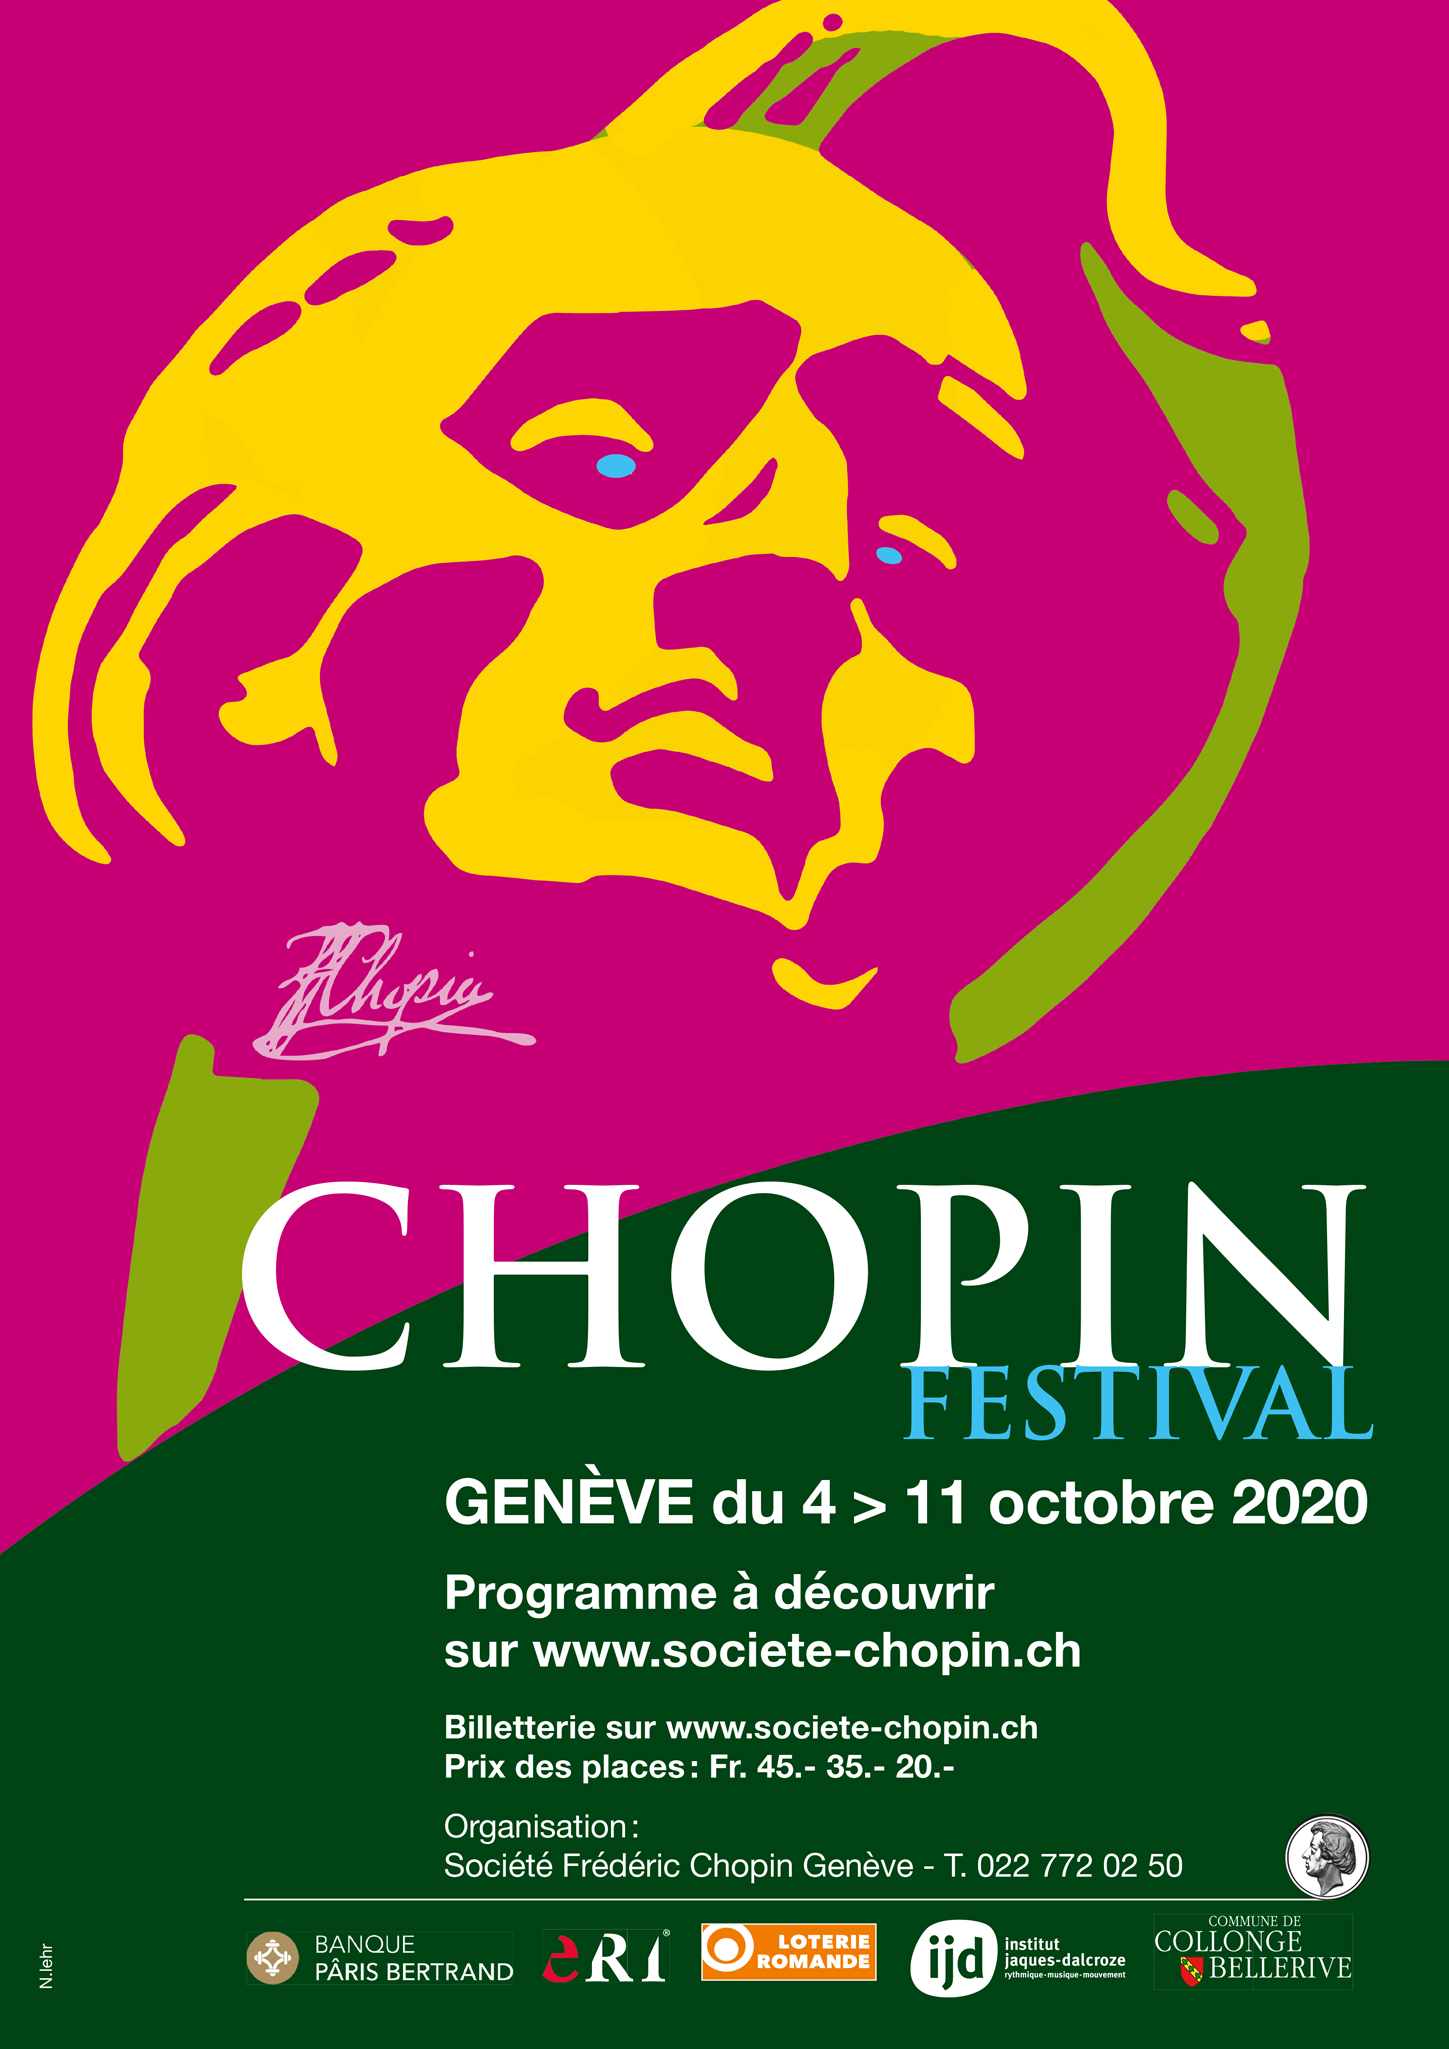  Festiwal Chopinowski w Genewie 2020